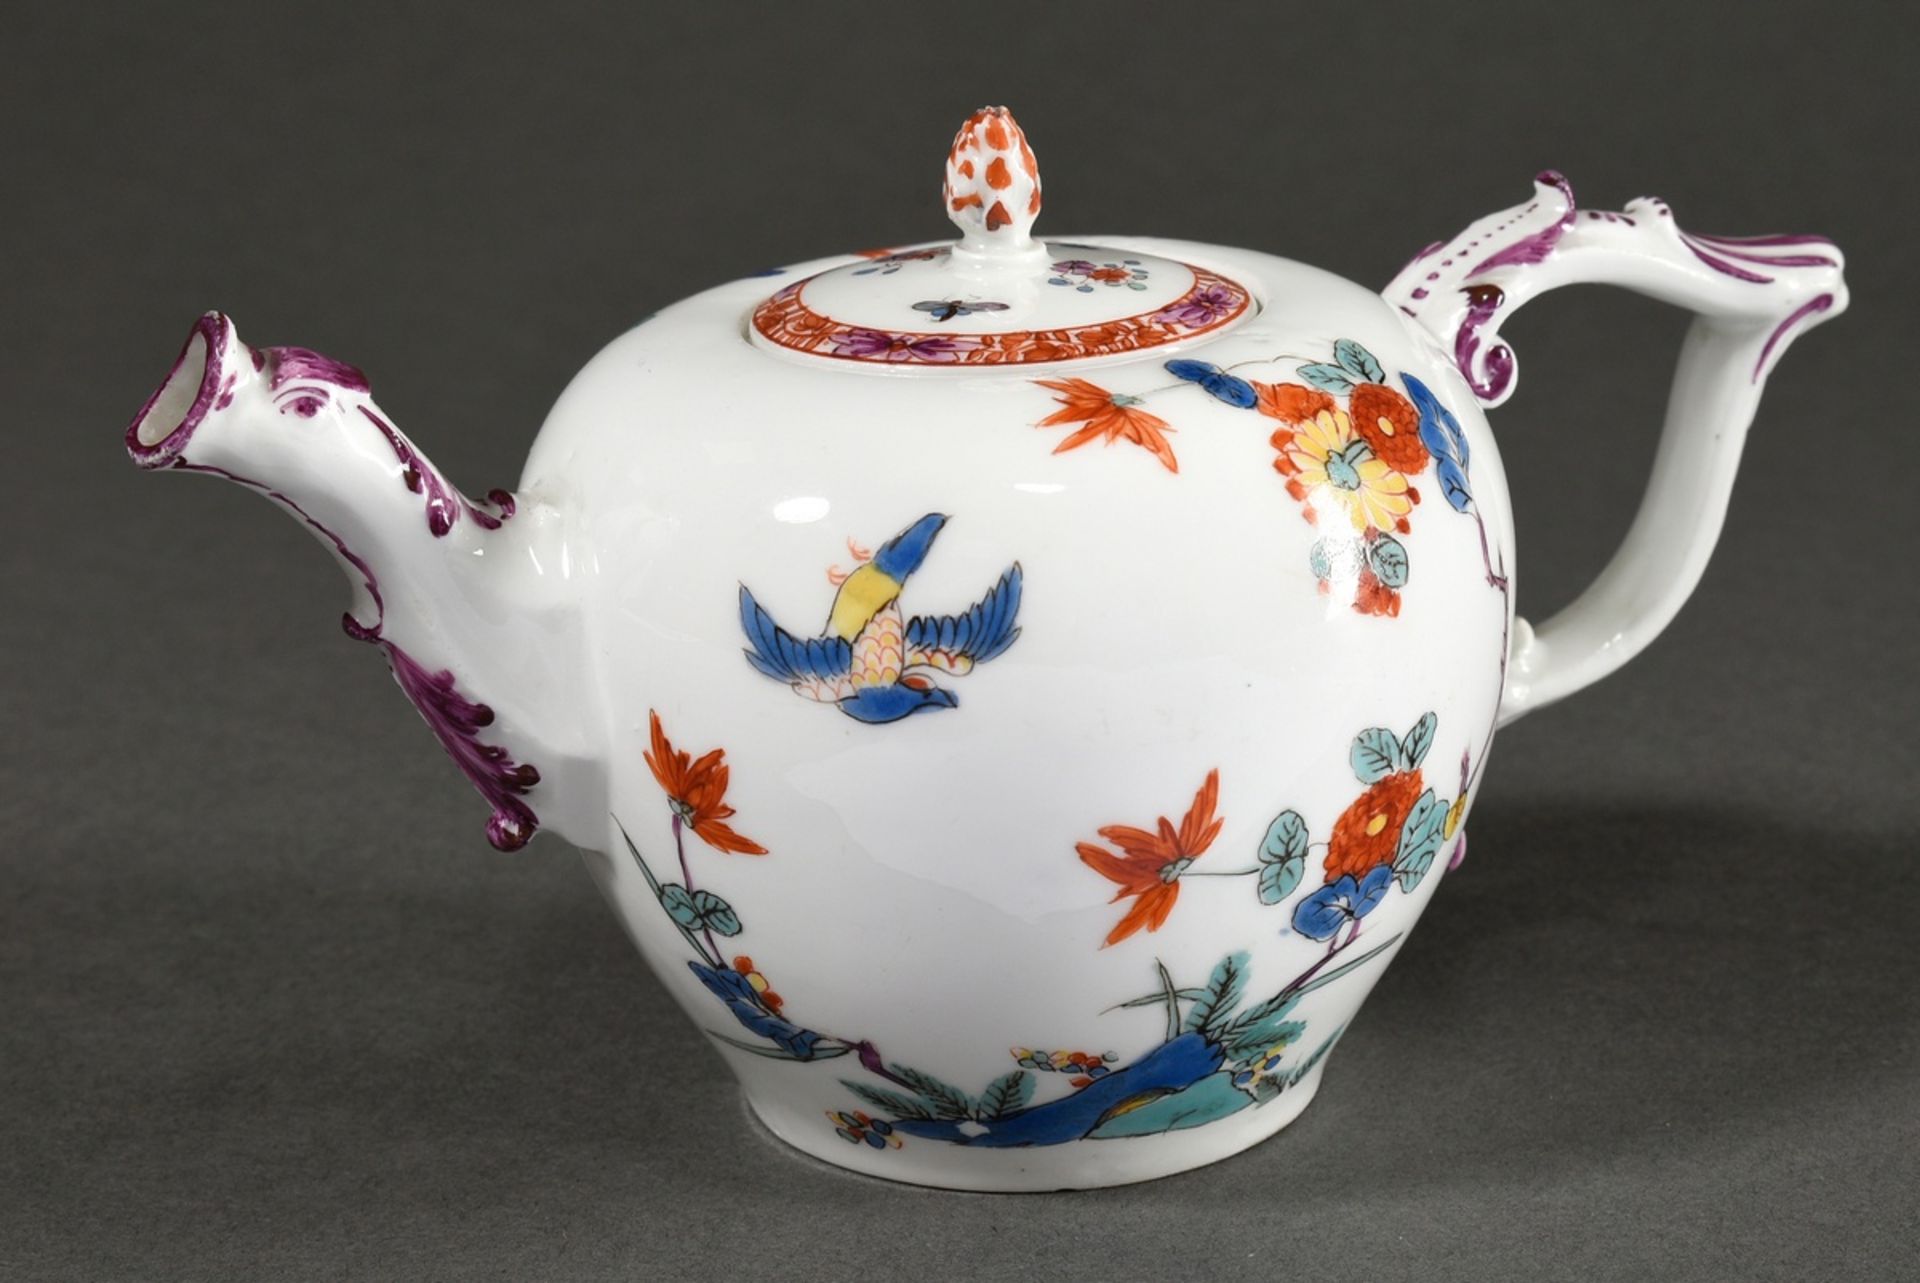 Small Meissen teapot with Kakiemon decor "Vogel und Blütenzweige" in iron red, overglaze blue, sea 